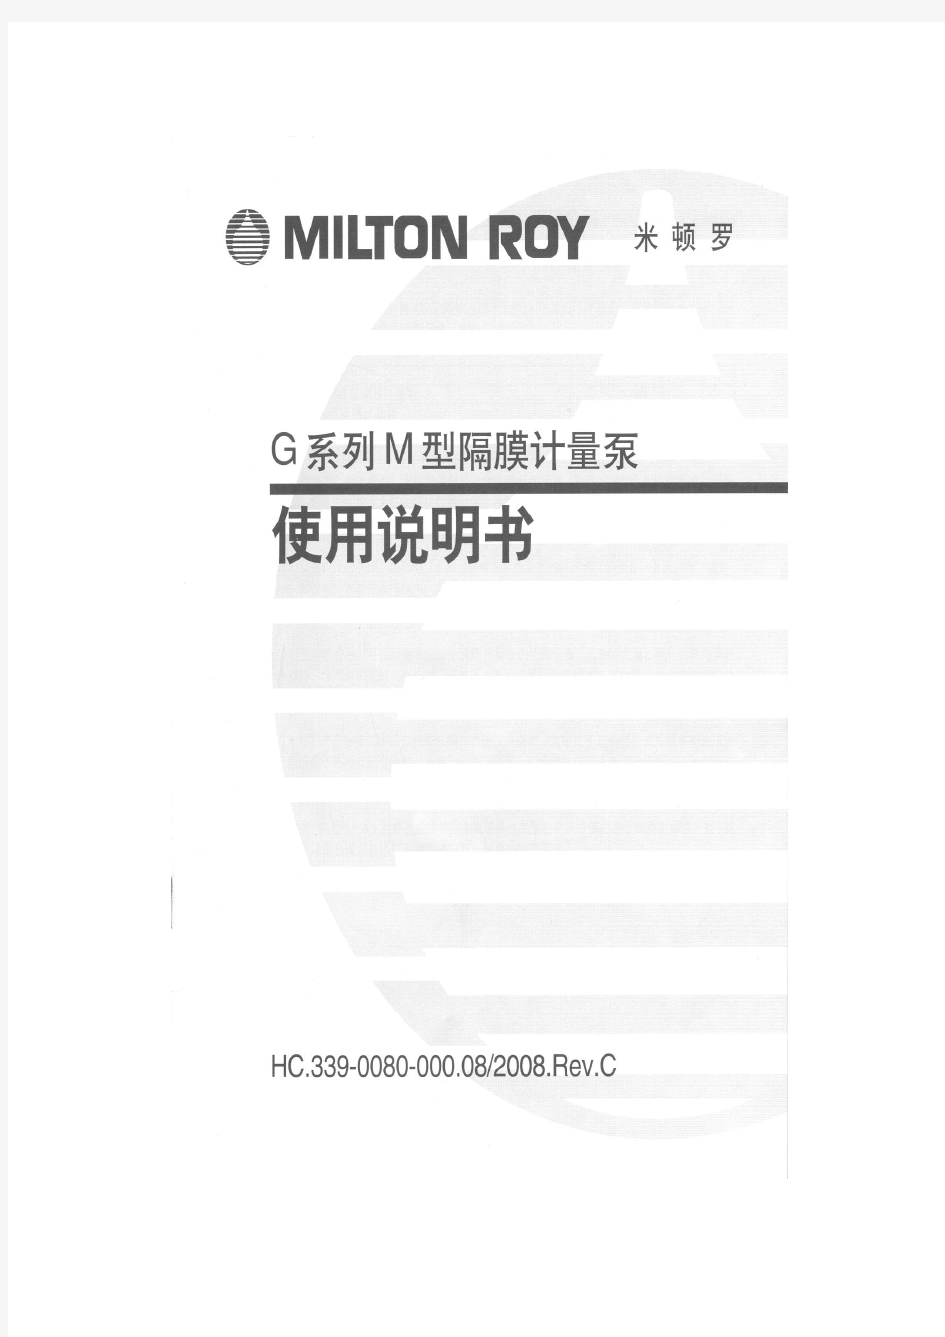 米顿罗GM系列隔膜计量泵说明书